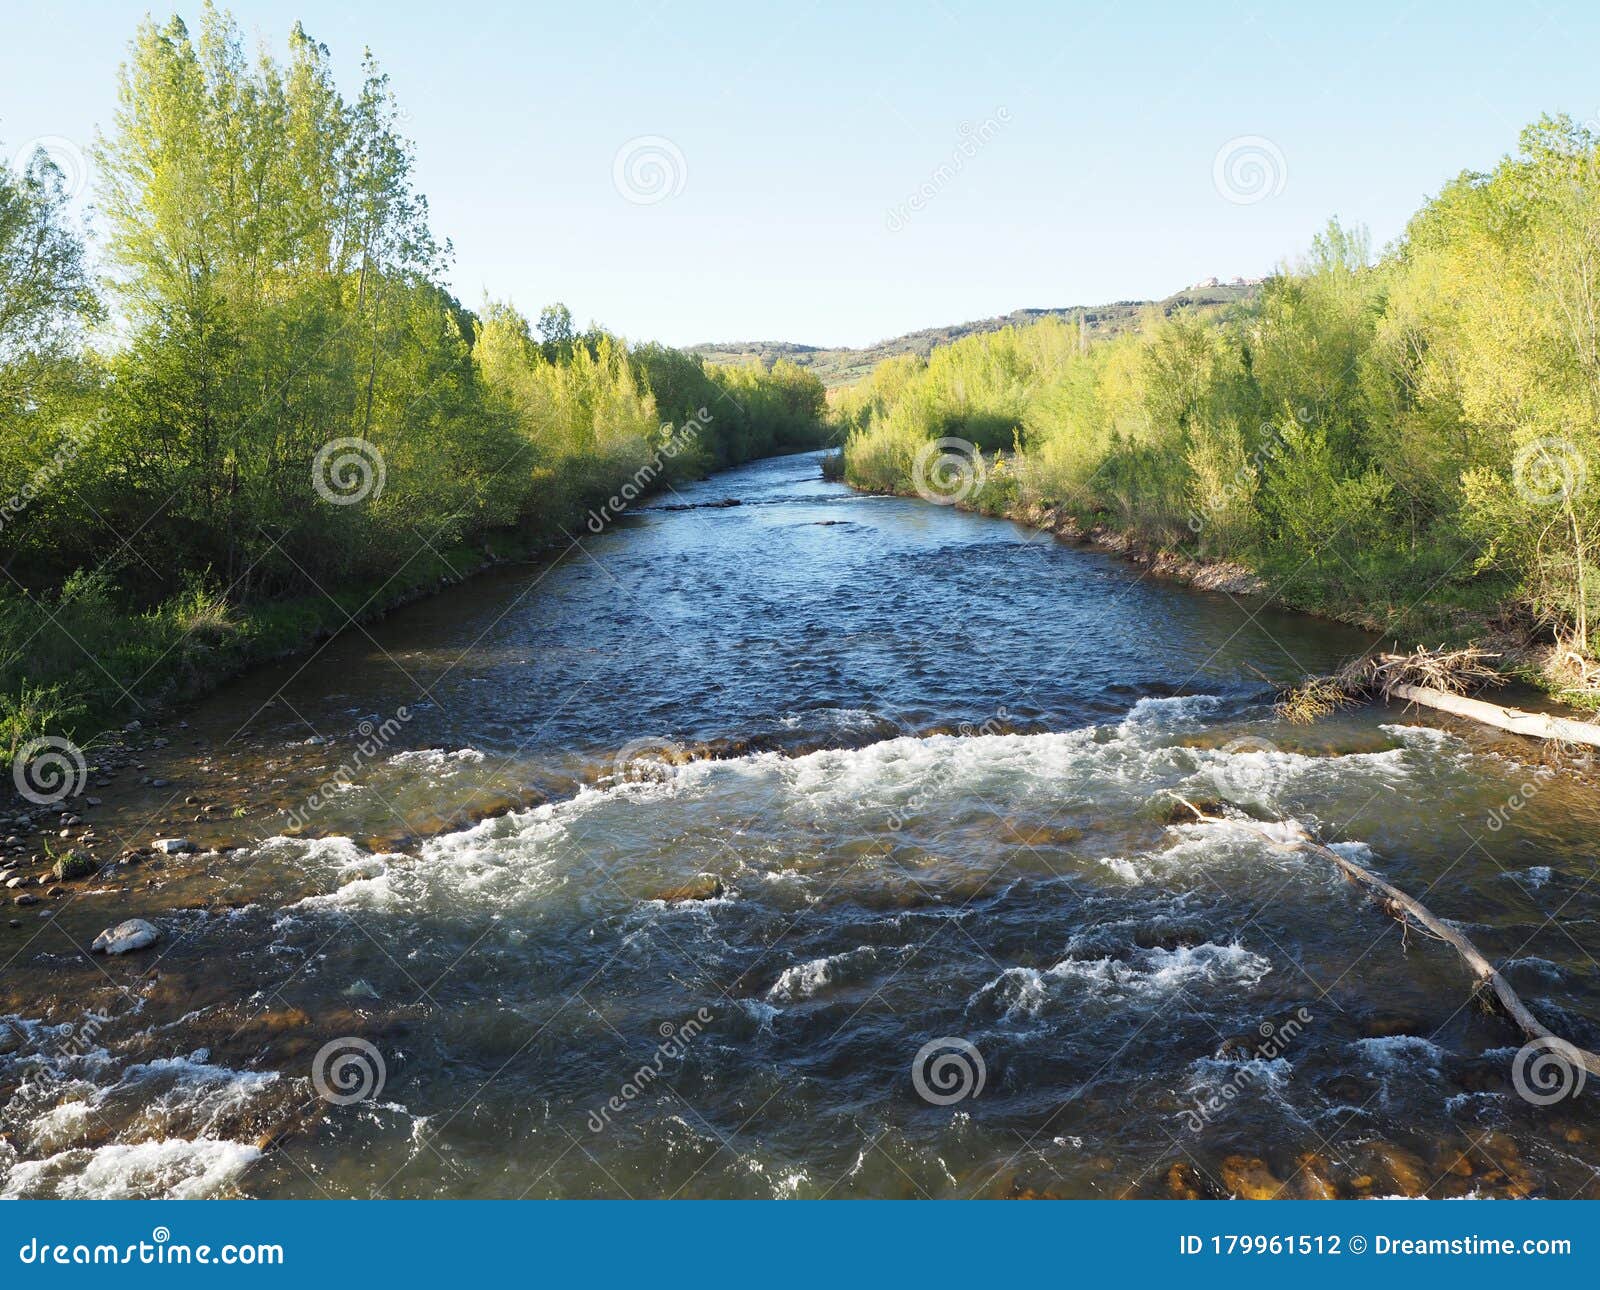 rivera del rio bernesga - riverbank of bernesga river